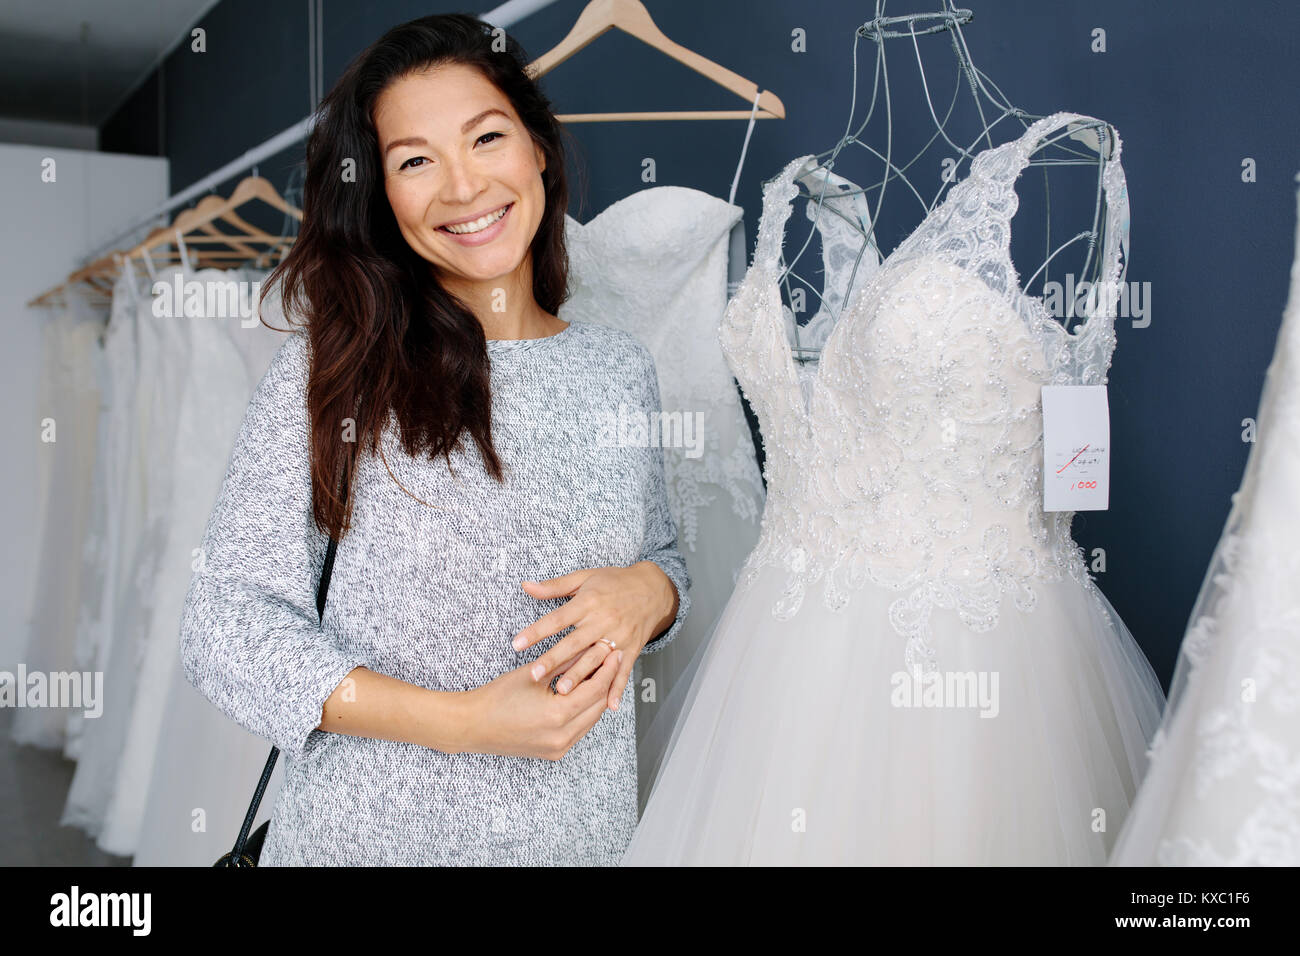 Attraktive junge Braut lächelnd, während sie Hochzeit Kleid in Bridal Boutique. Lächelnd asiatische Frau Einkaufen für Hochzeit Ausstattung in Braut Kleidung sto Stockfoto